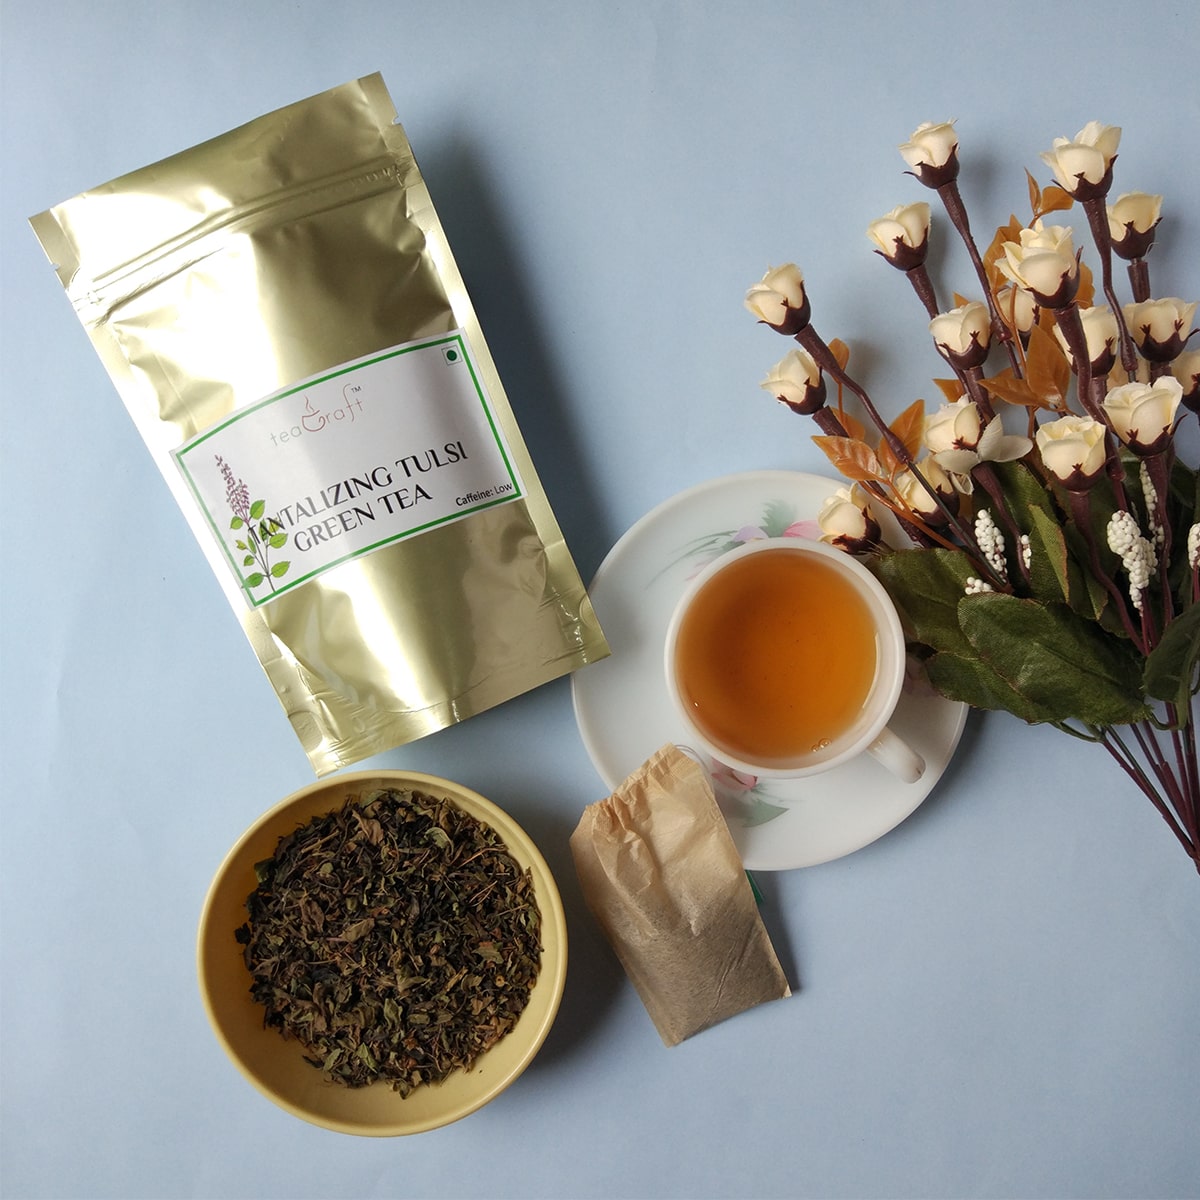 teaGraft - Black Tea, Green Tea, Herbal Tea, Chai, White Tea